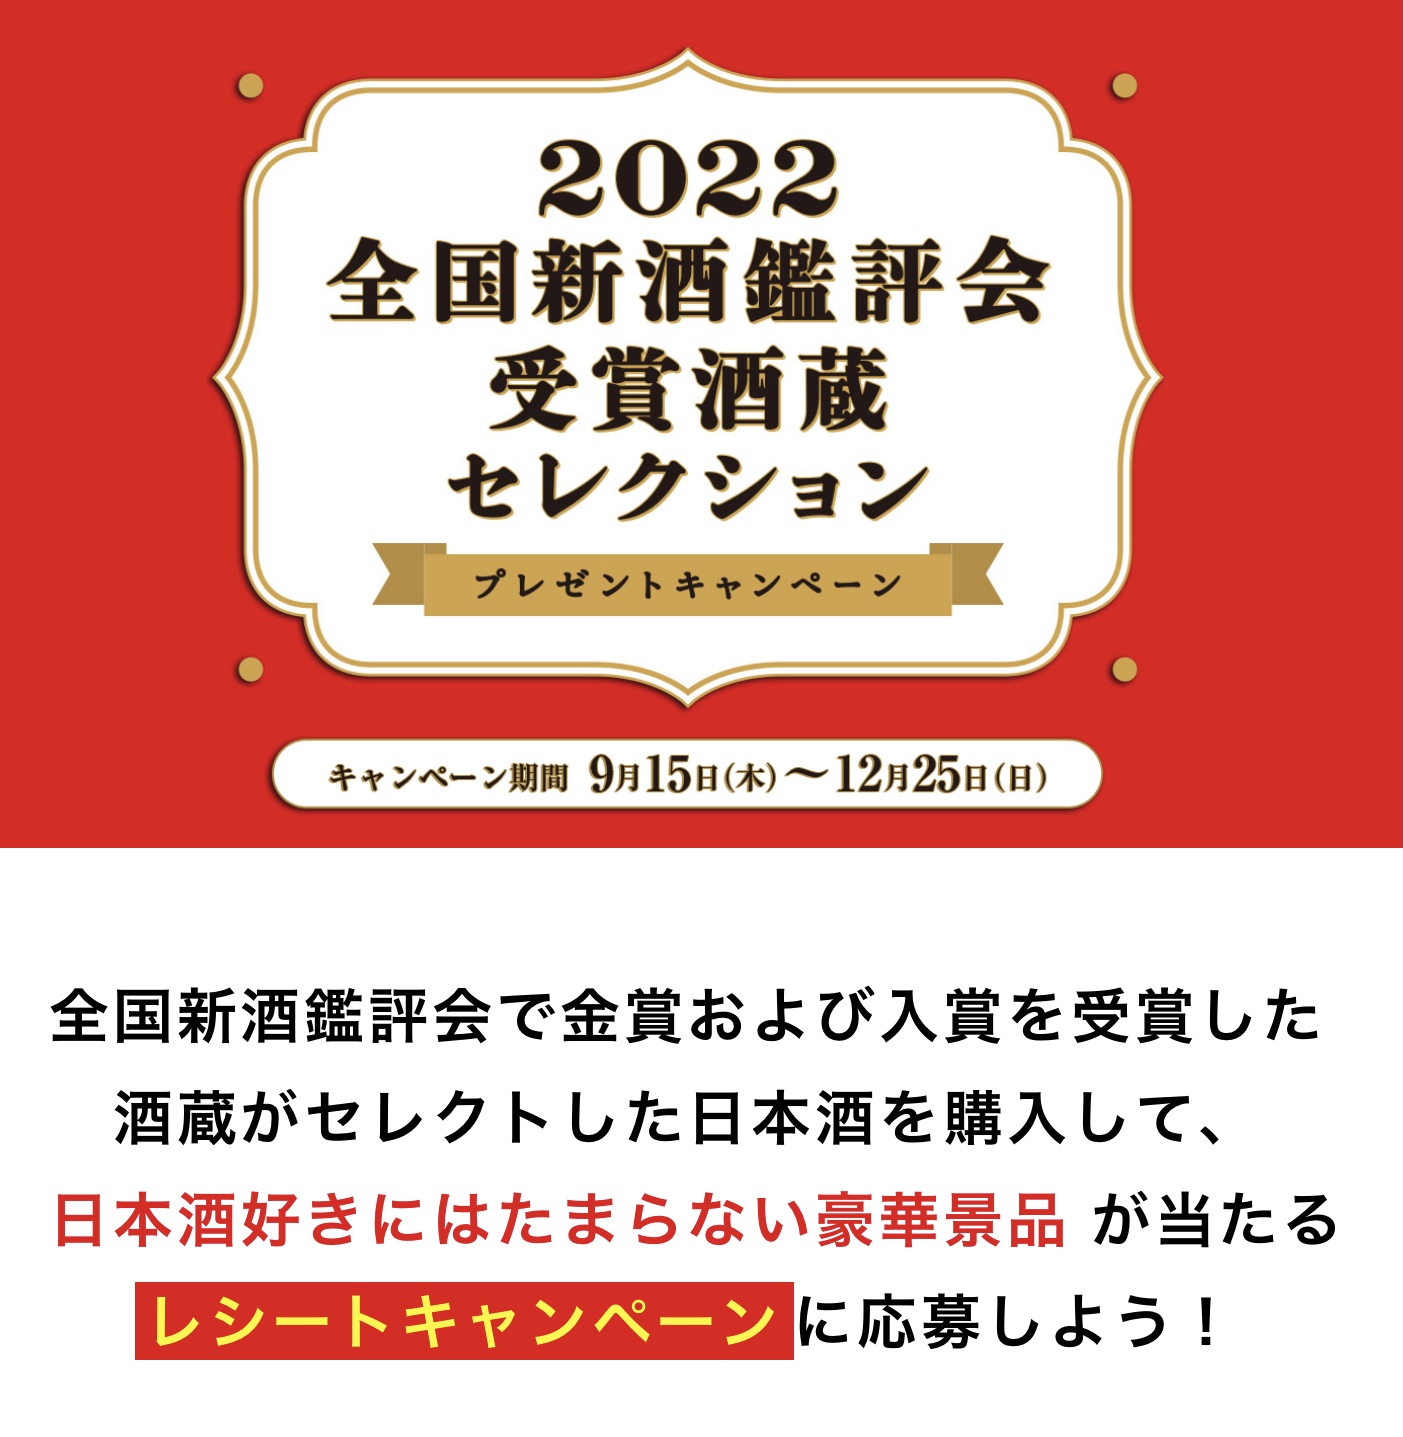 「2022全国新酒鑑評会受賞酒蔵セレクション」のお知らせ